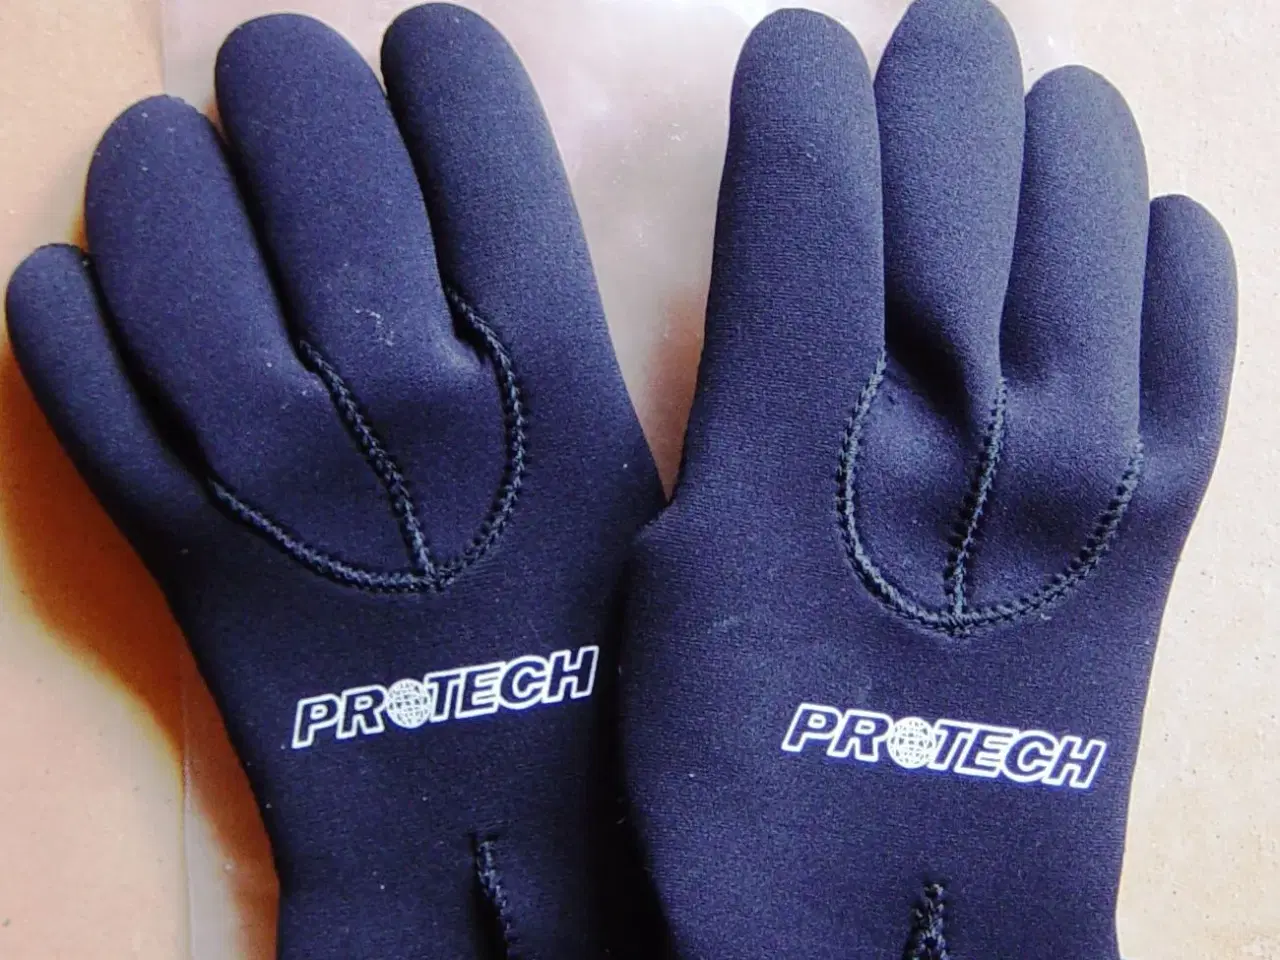 Billede 1 - Protech neopren handsker - i str. M/L/XL